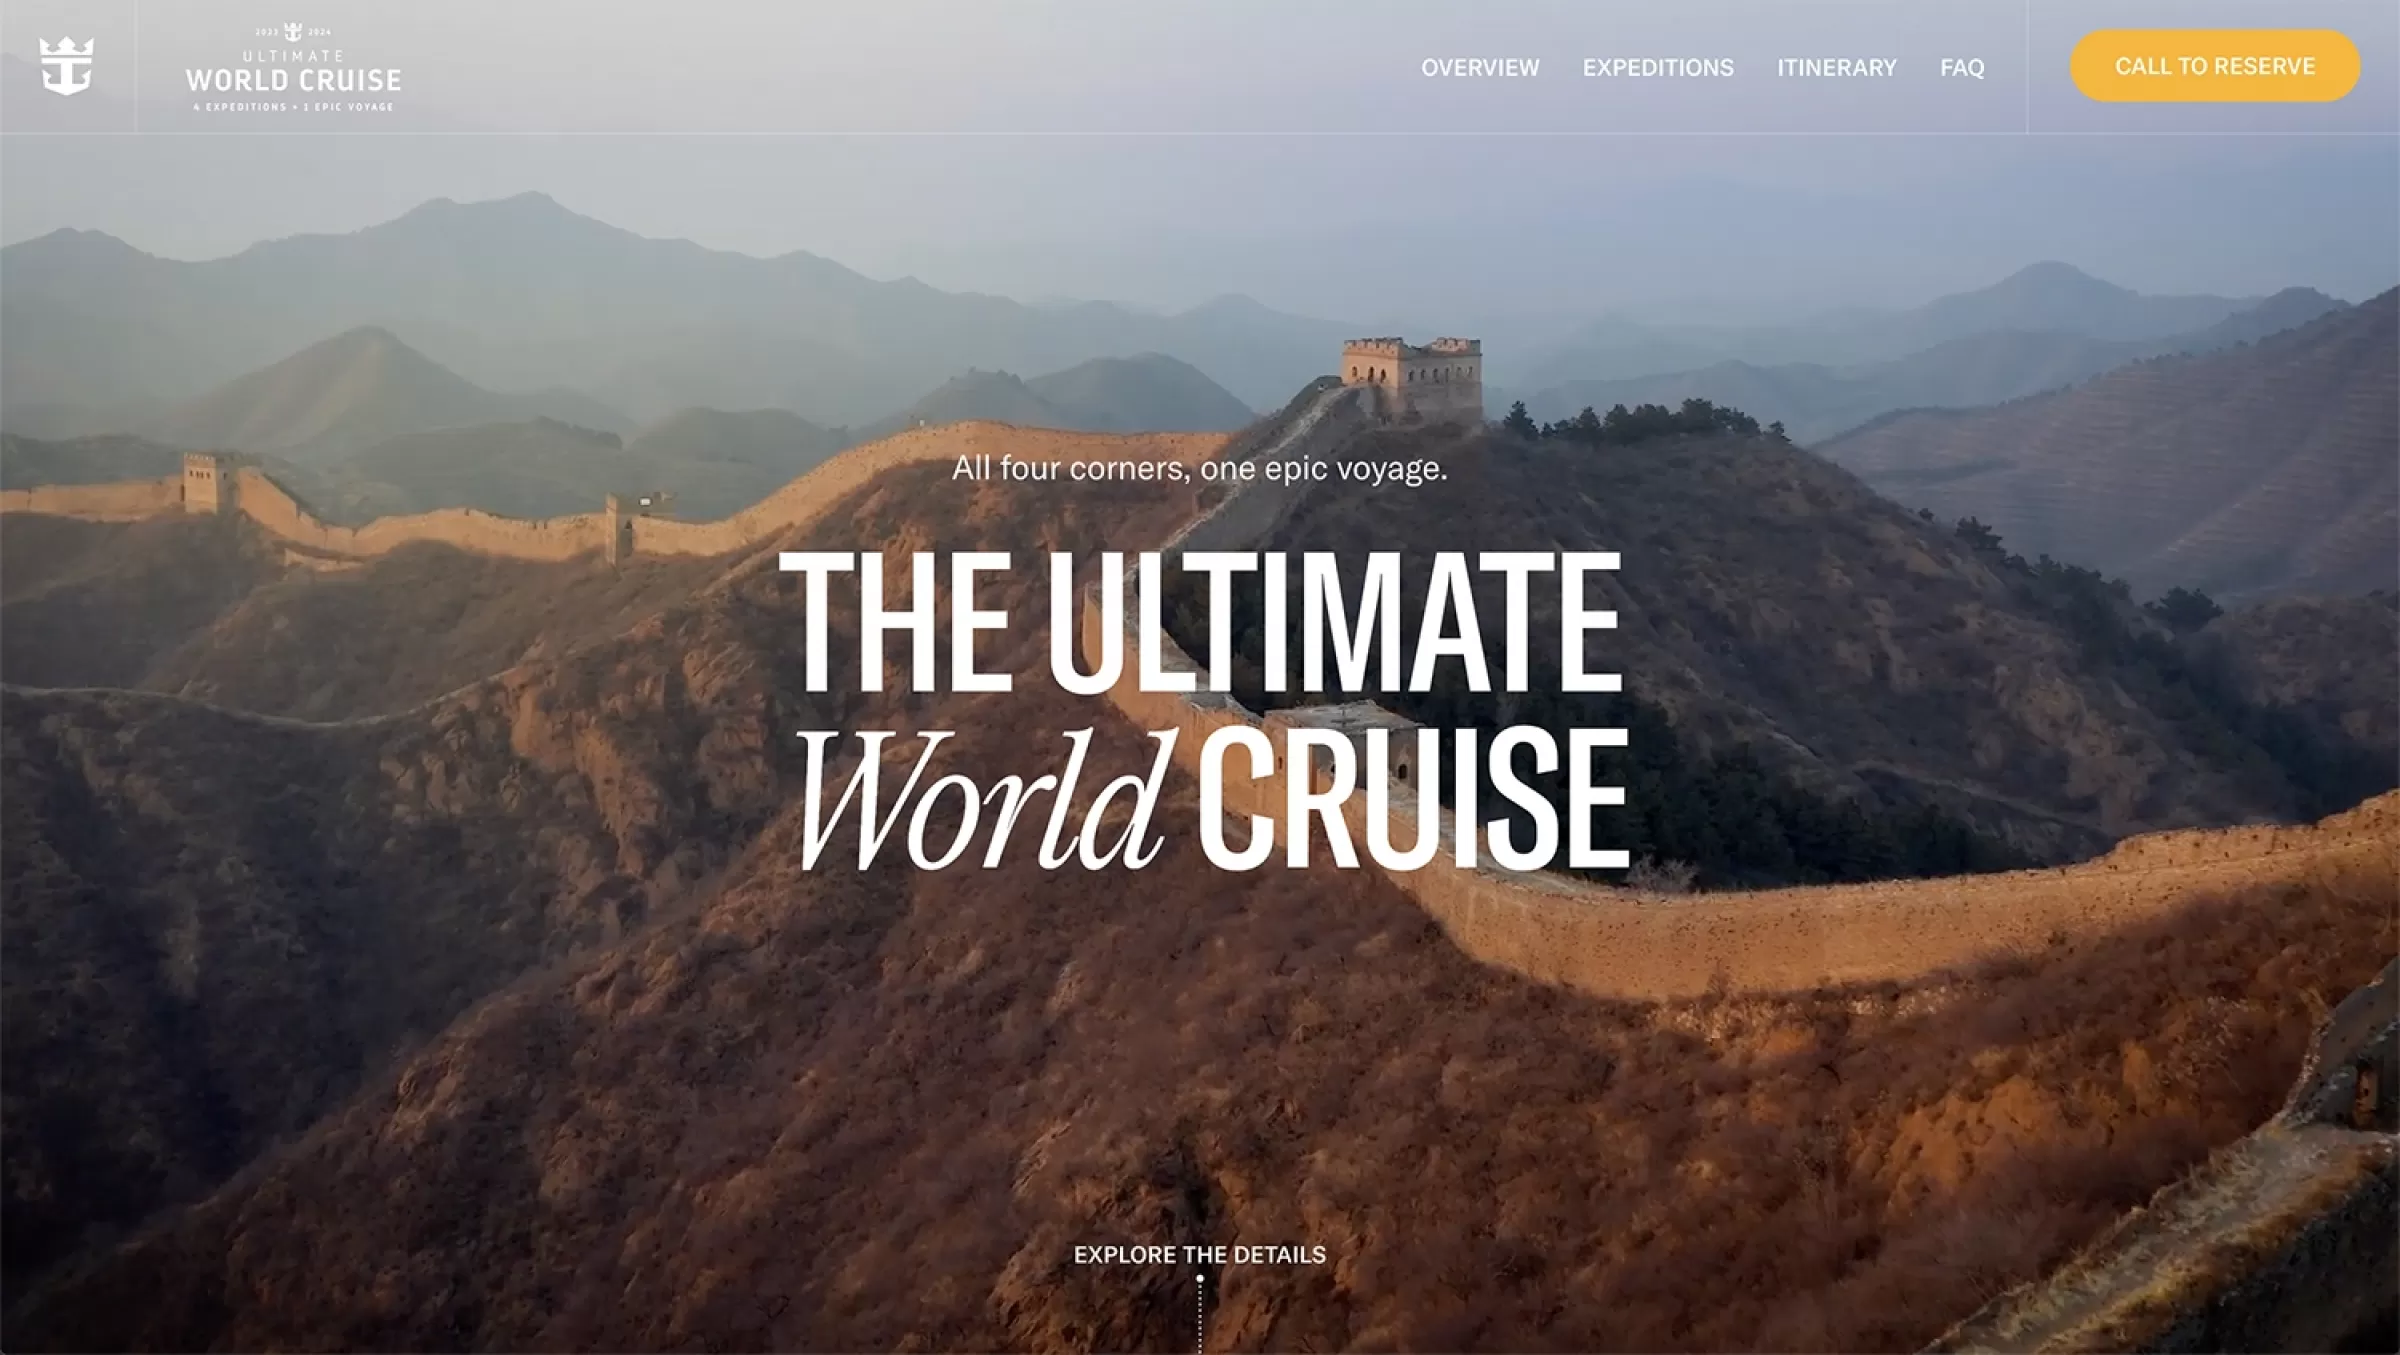 Ultimate World Cruise